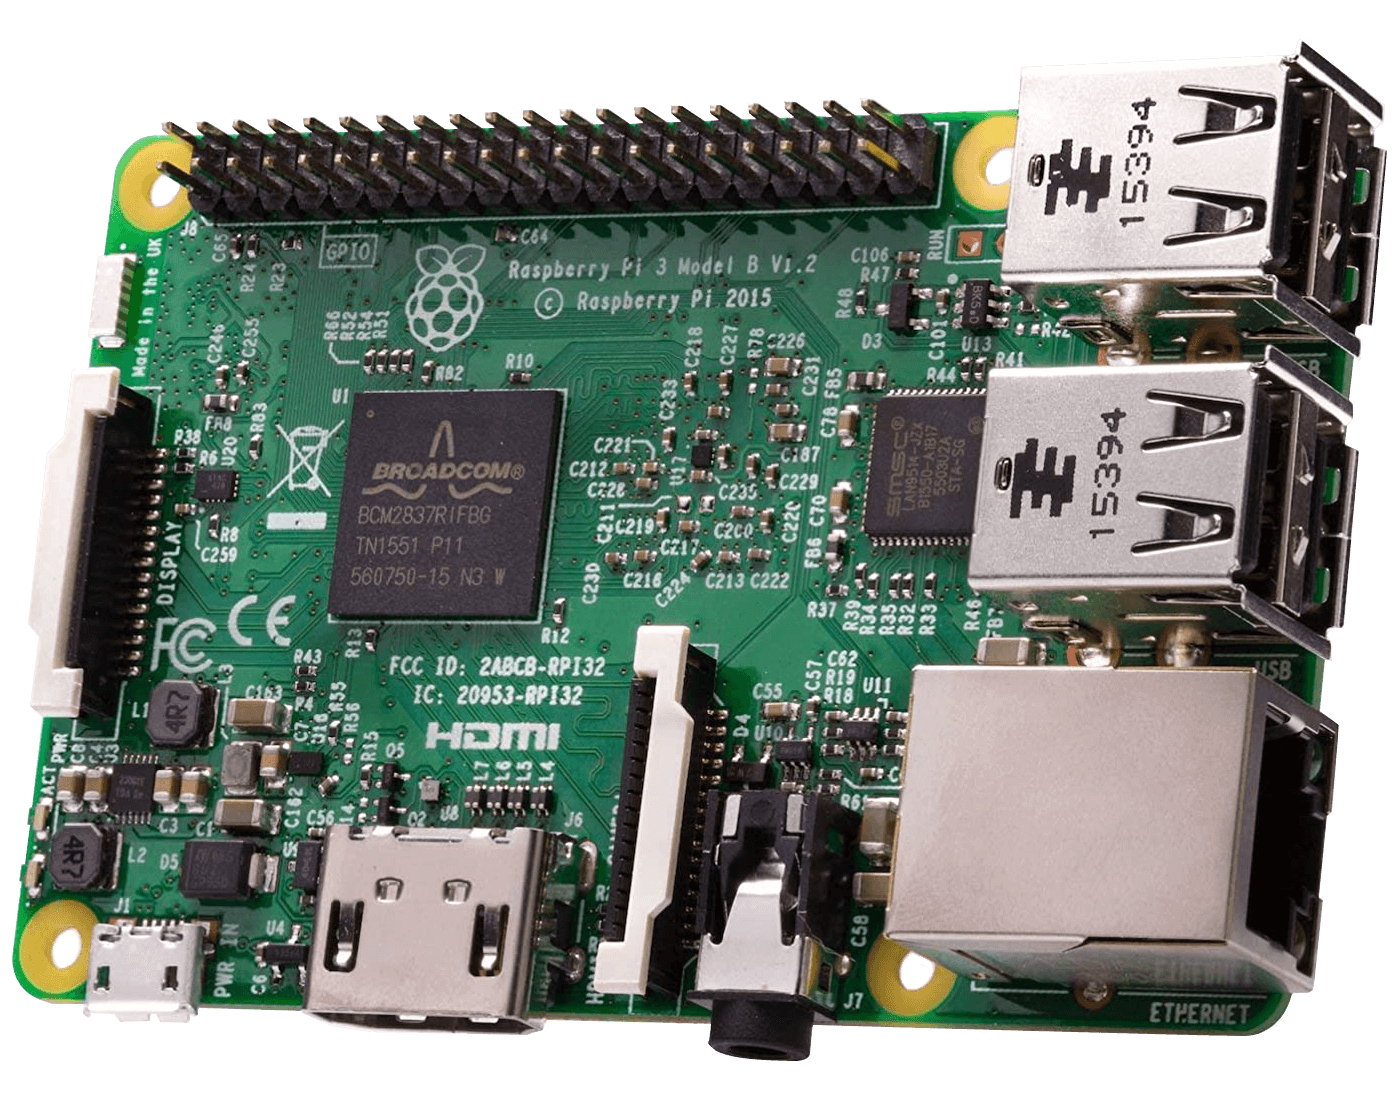 A Raspberry Pi computer with a Broadcom-made ARM CPU